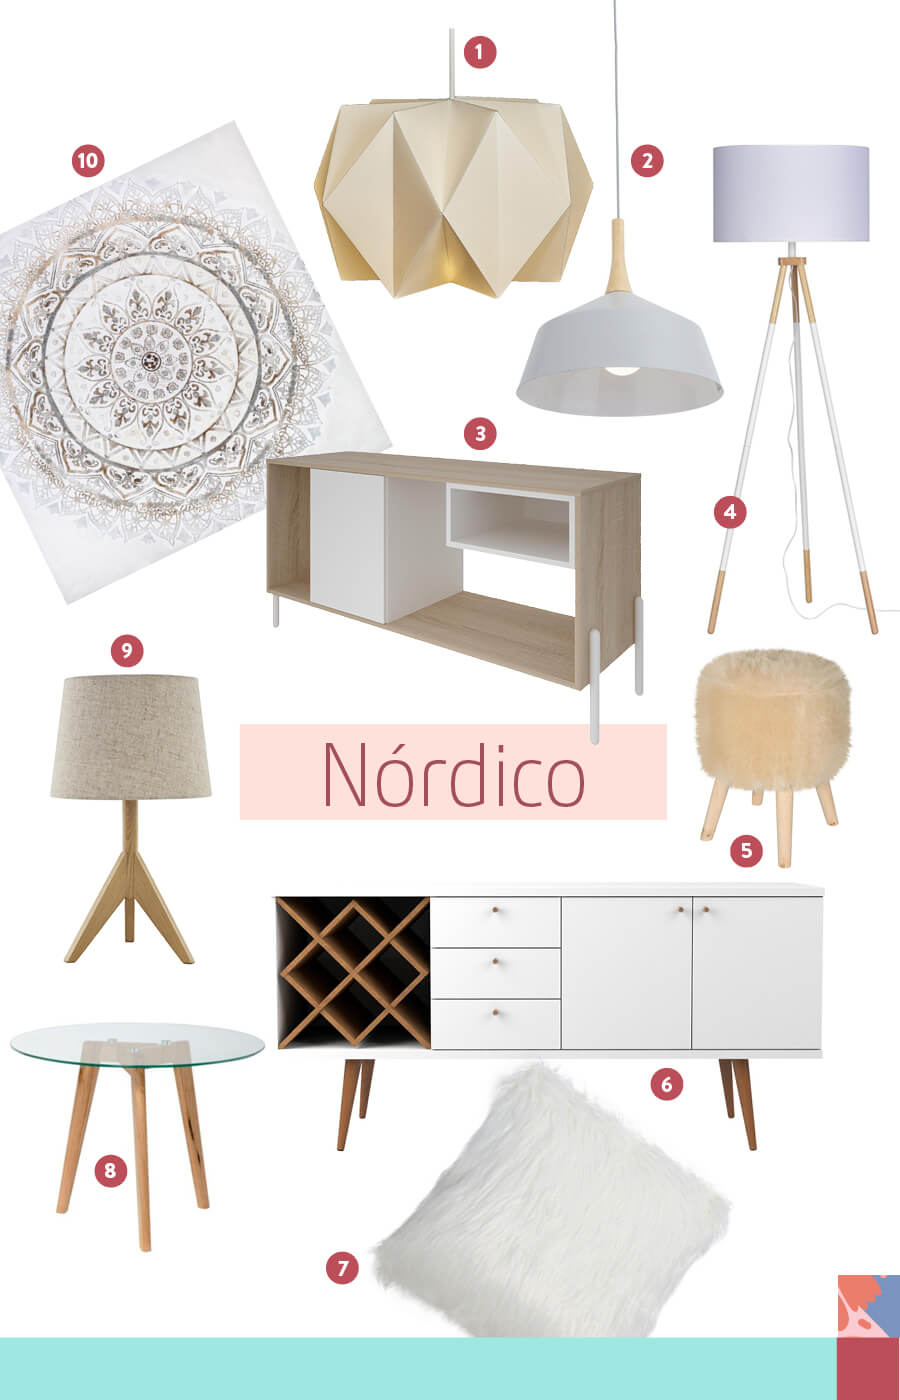 mesas de centro, lámparas y muebles para crear una decoración estilo nórdico